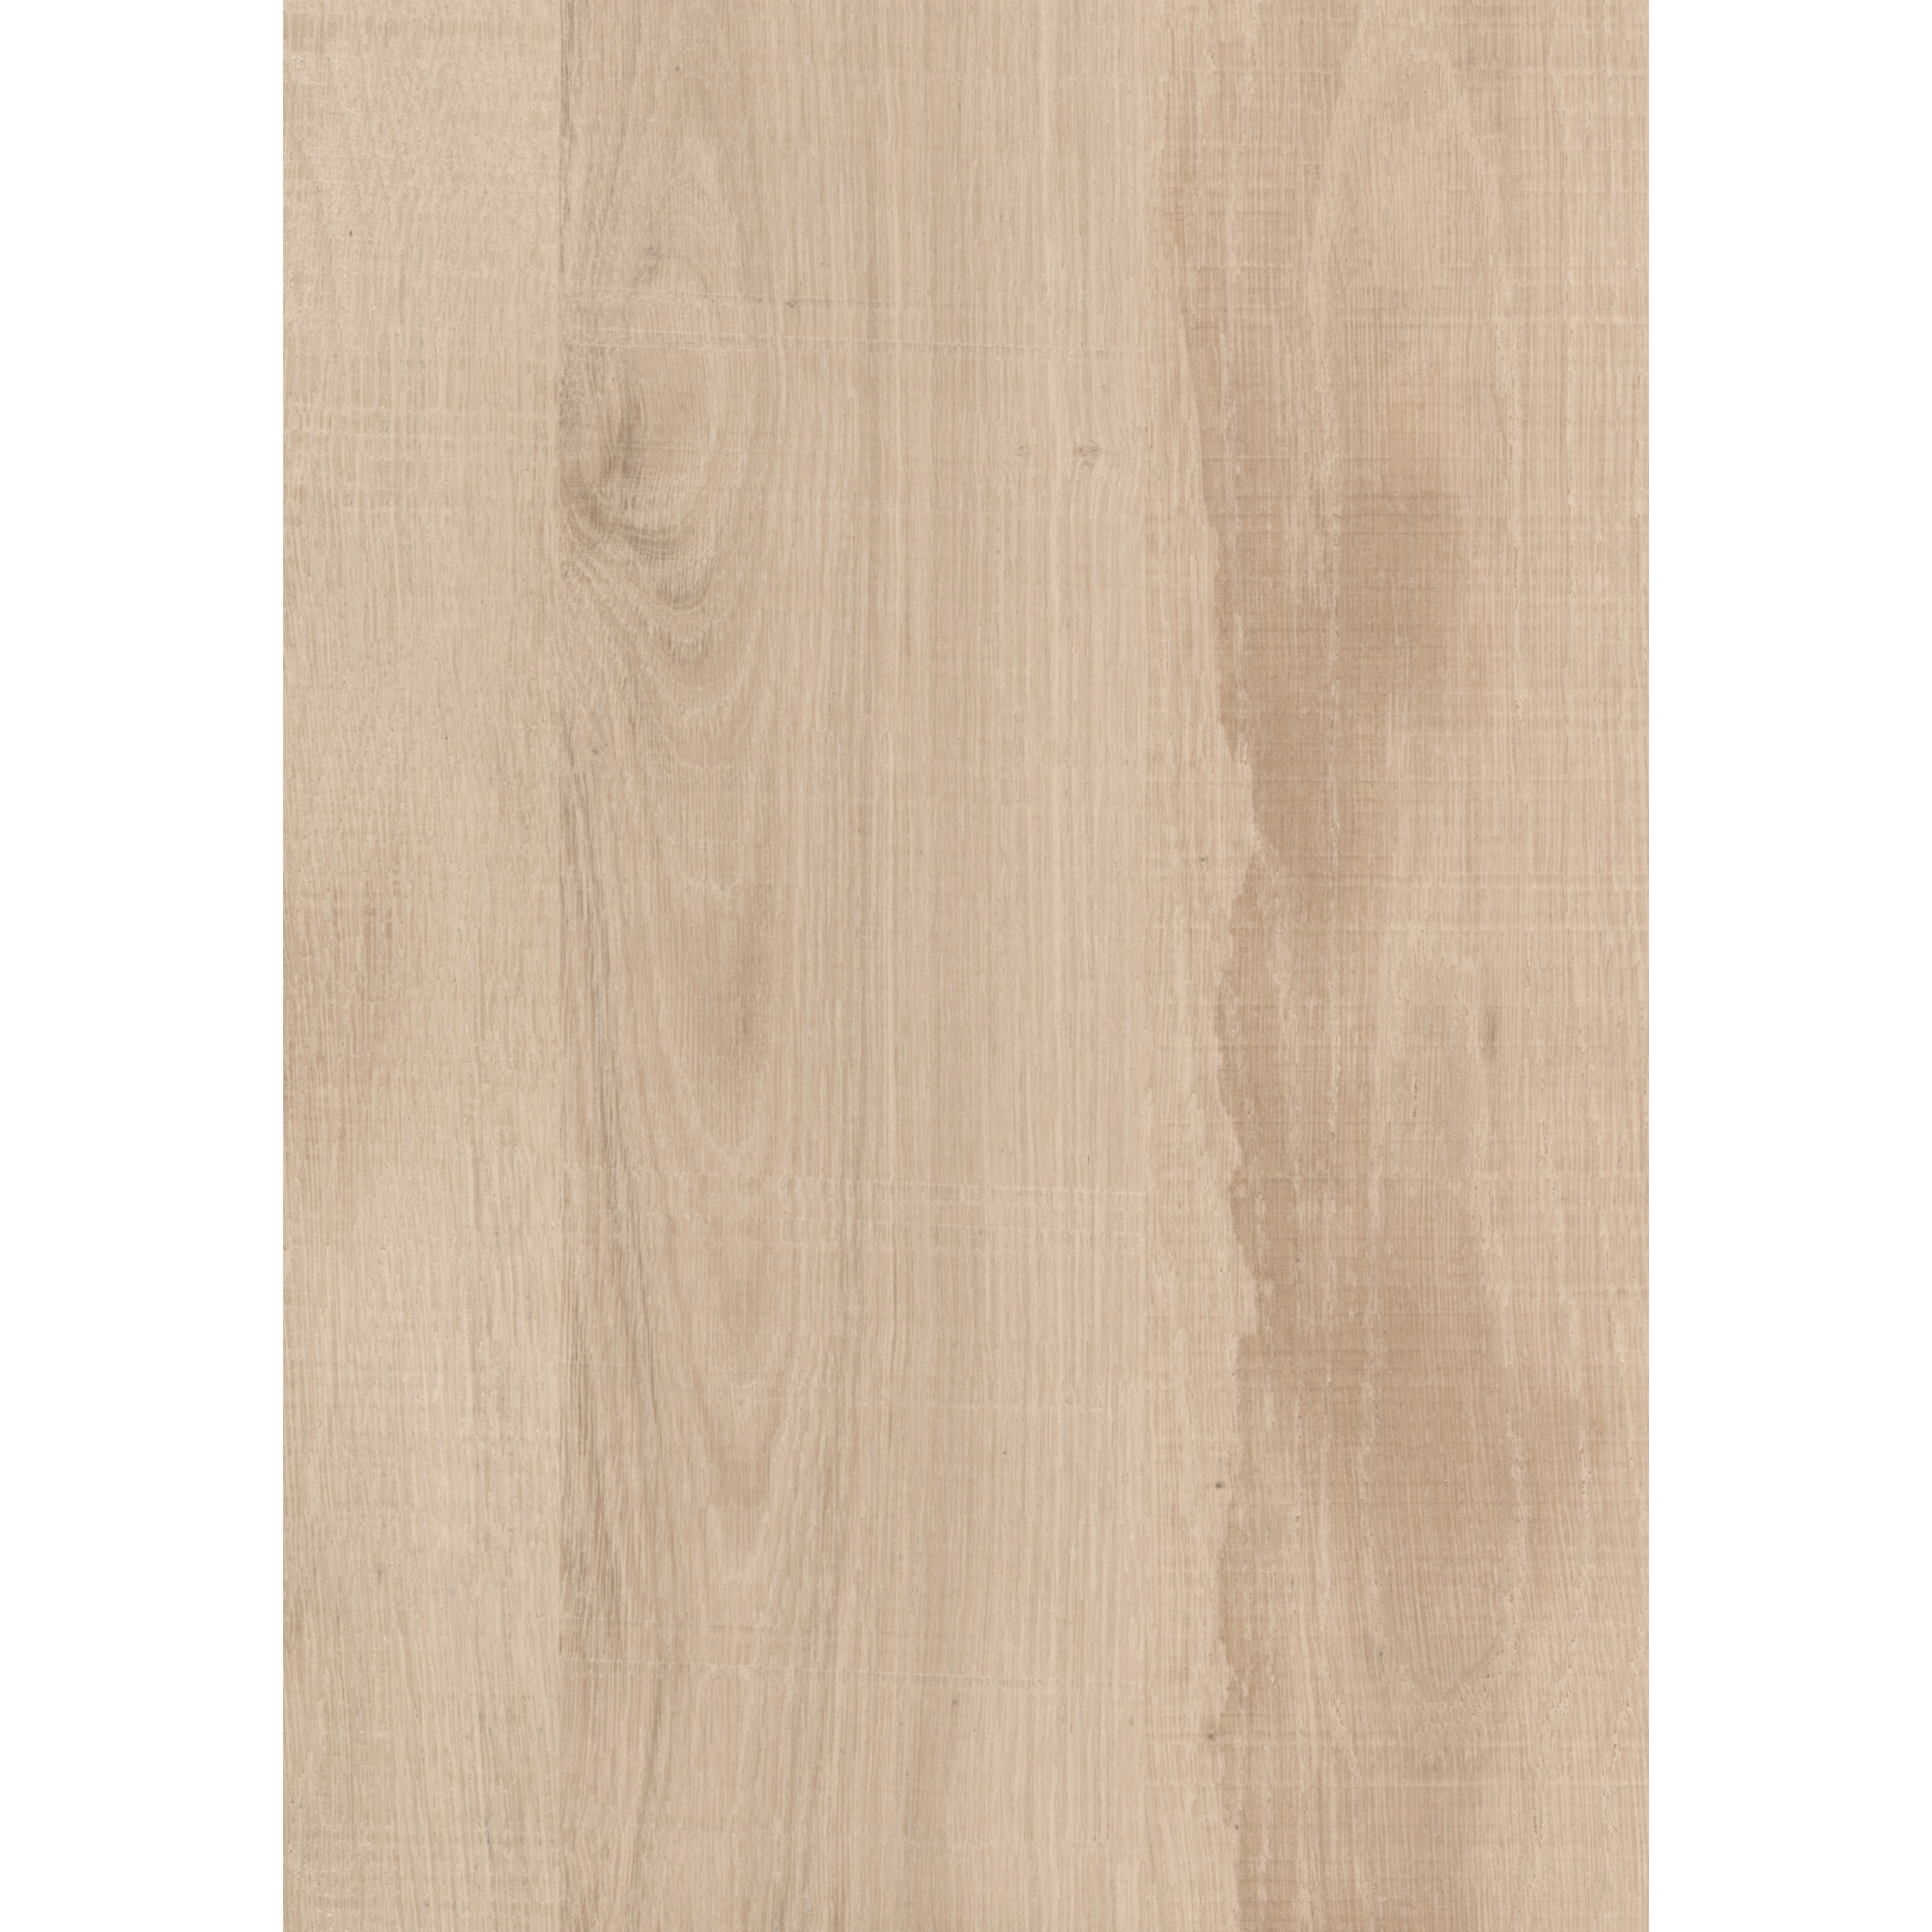 Zubehörset für Wandanschlussprofil 'Native Oak Light' beige 5-teilig + product picture